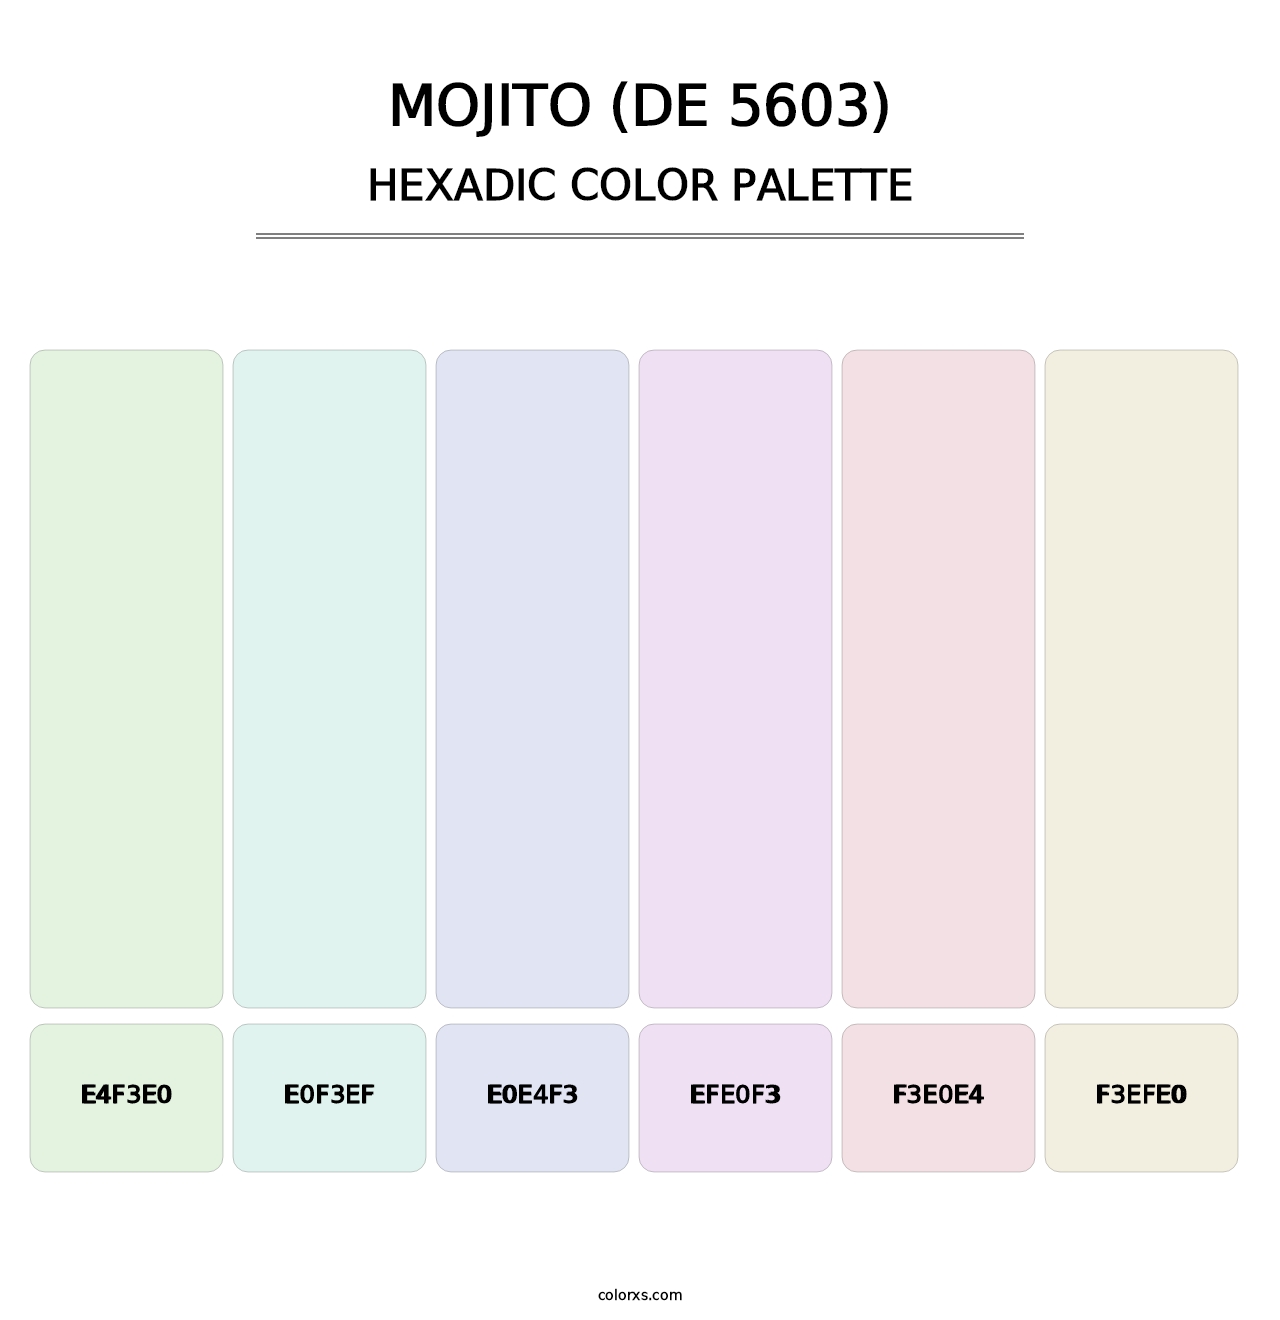 Mojito (DE 5603) - Hexadic Color Palette